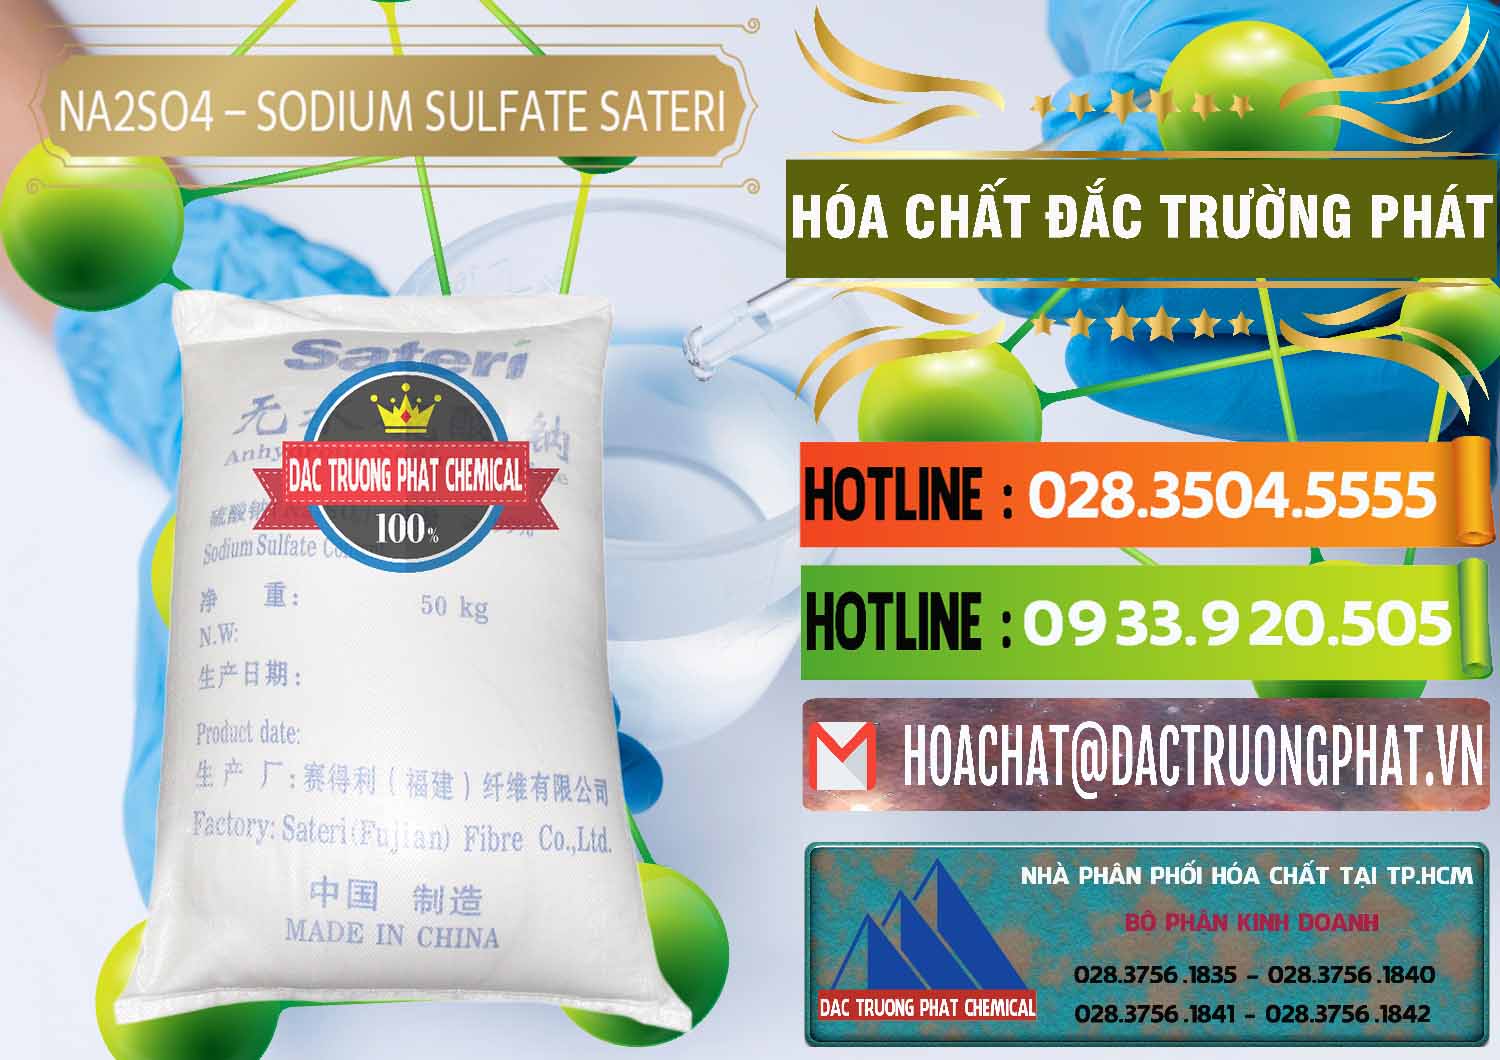 Cty kinh doanh & bán Sodium Sulphate - Muối Sunfat Na2SO4 Sateri Trung Quốc China - 0100 - Đơn vị cung cấp ( nhập khẩu ) hóa chất tại TP.HCM - cungcaphoachat.com.vn